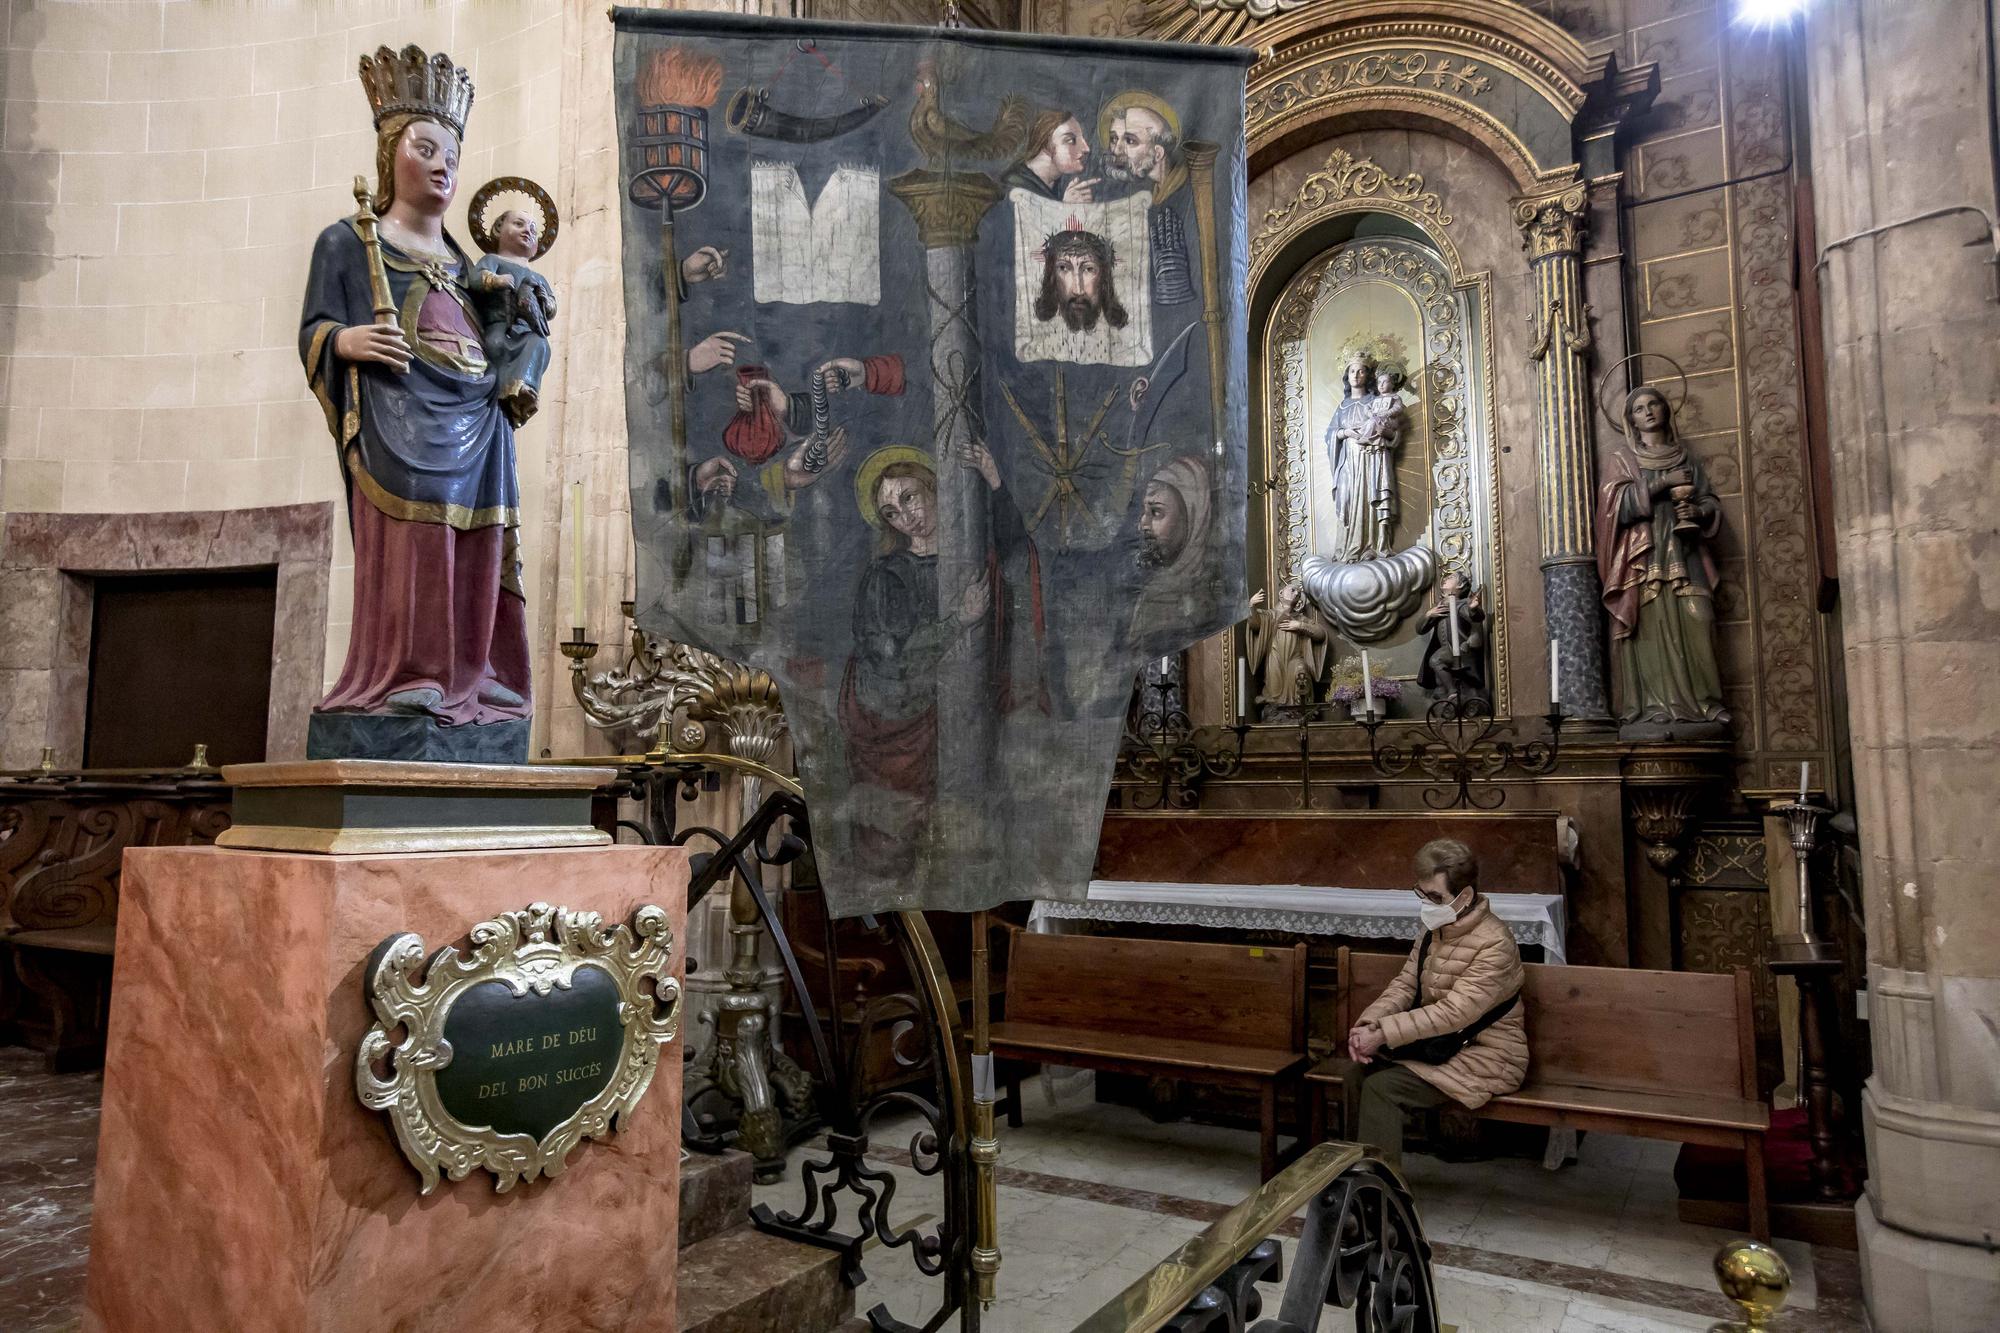 Sant Nicolau luce sus restaurados estandartes de la Pasión de Cristo